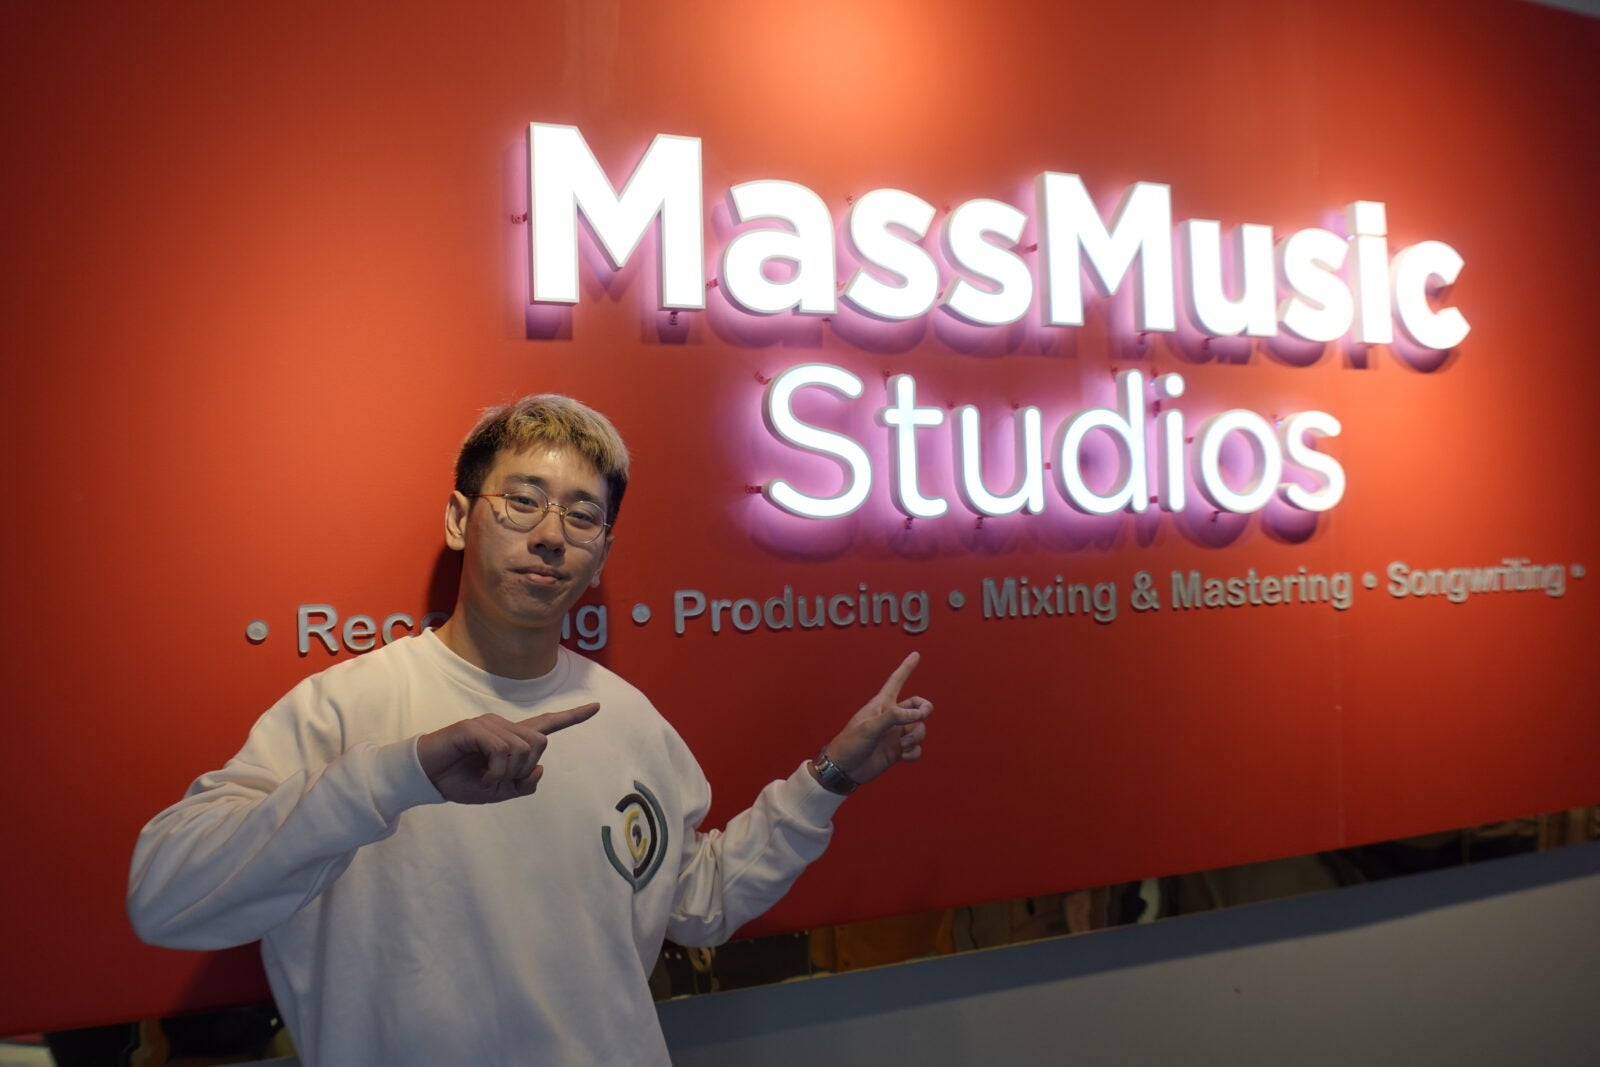 Yue Wai Ming posing in front of their logo at MassMusic Studios in Petaling Jaya, Selangor.